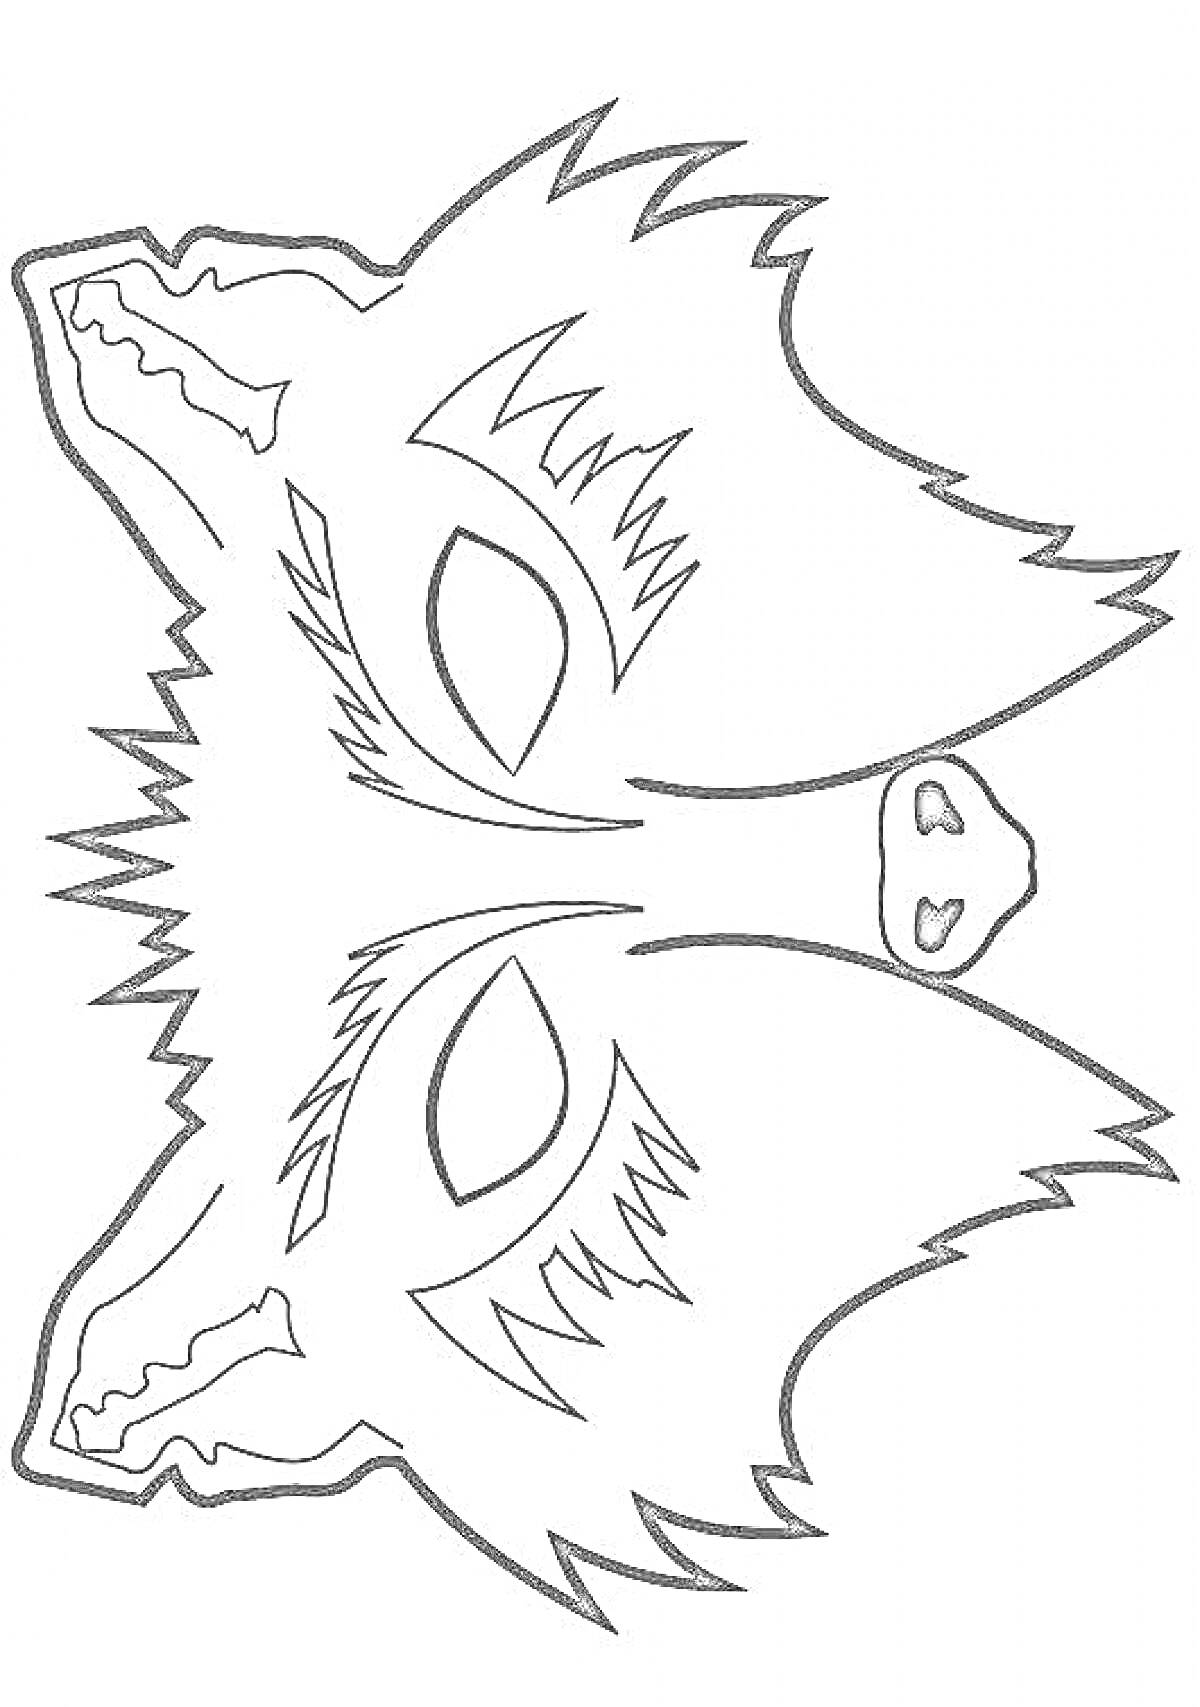 Раскраска раскраска маски волка с глазами, ушами, носом и мехом